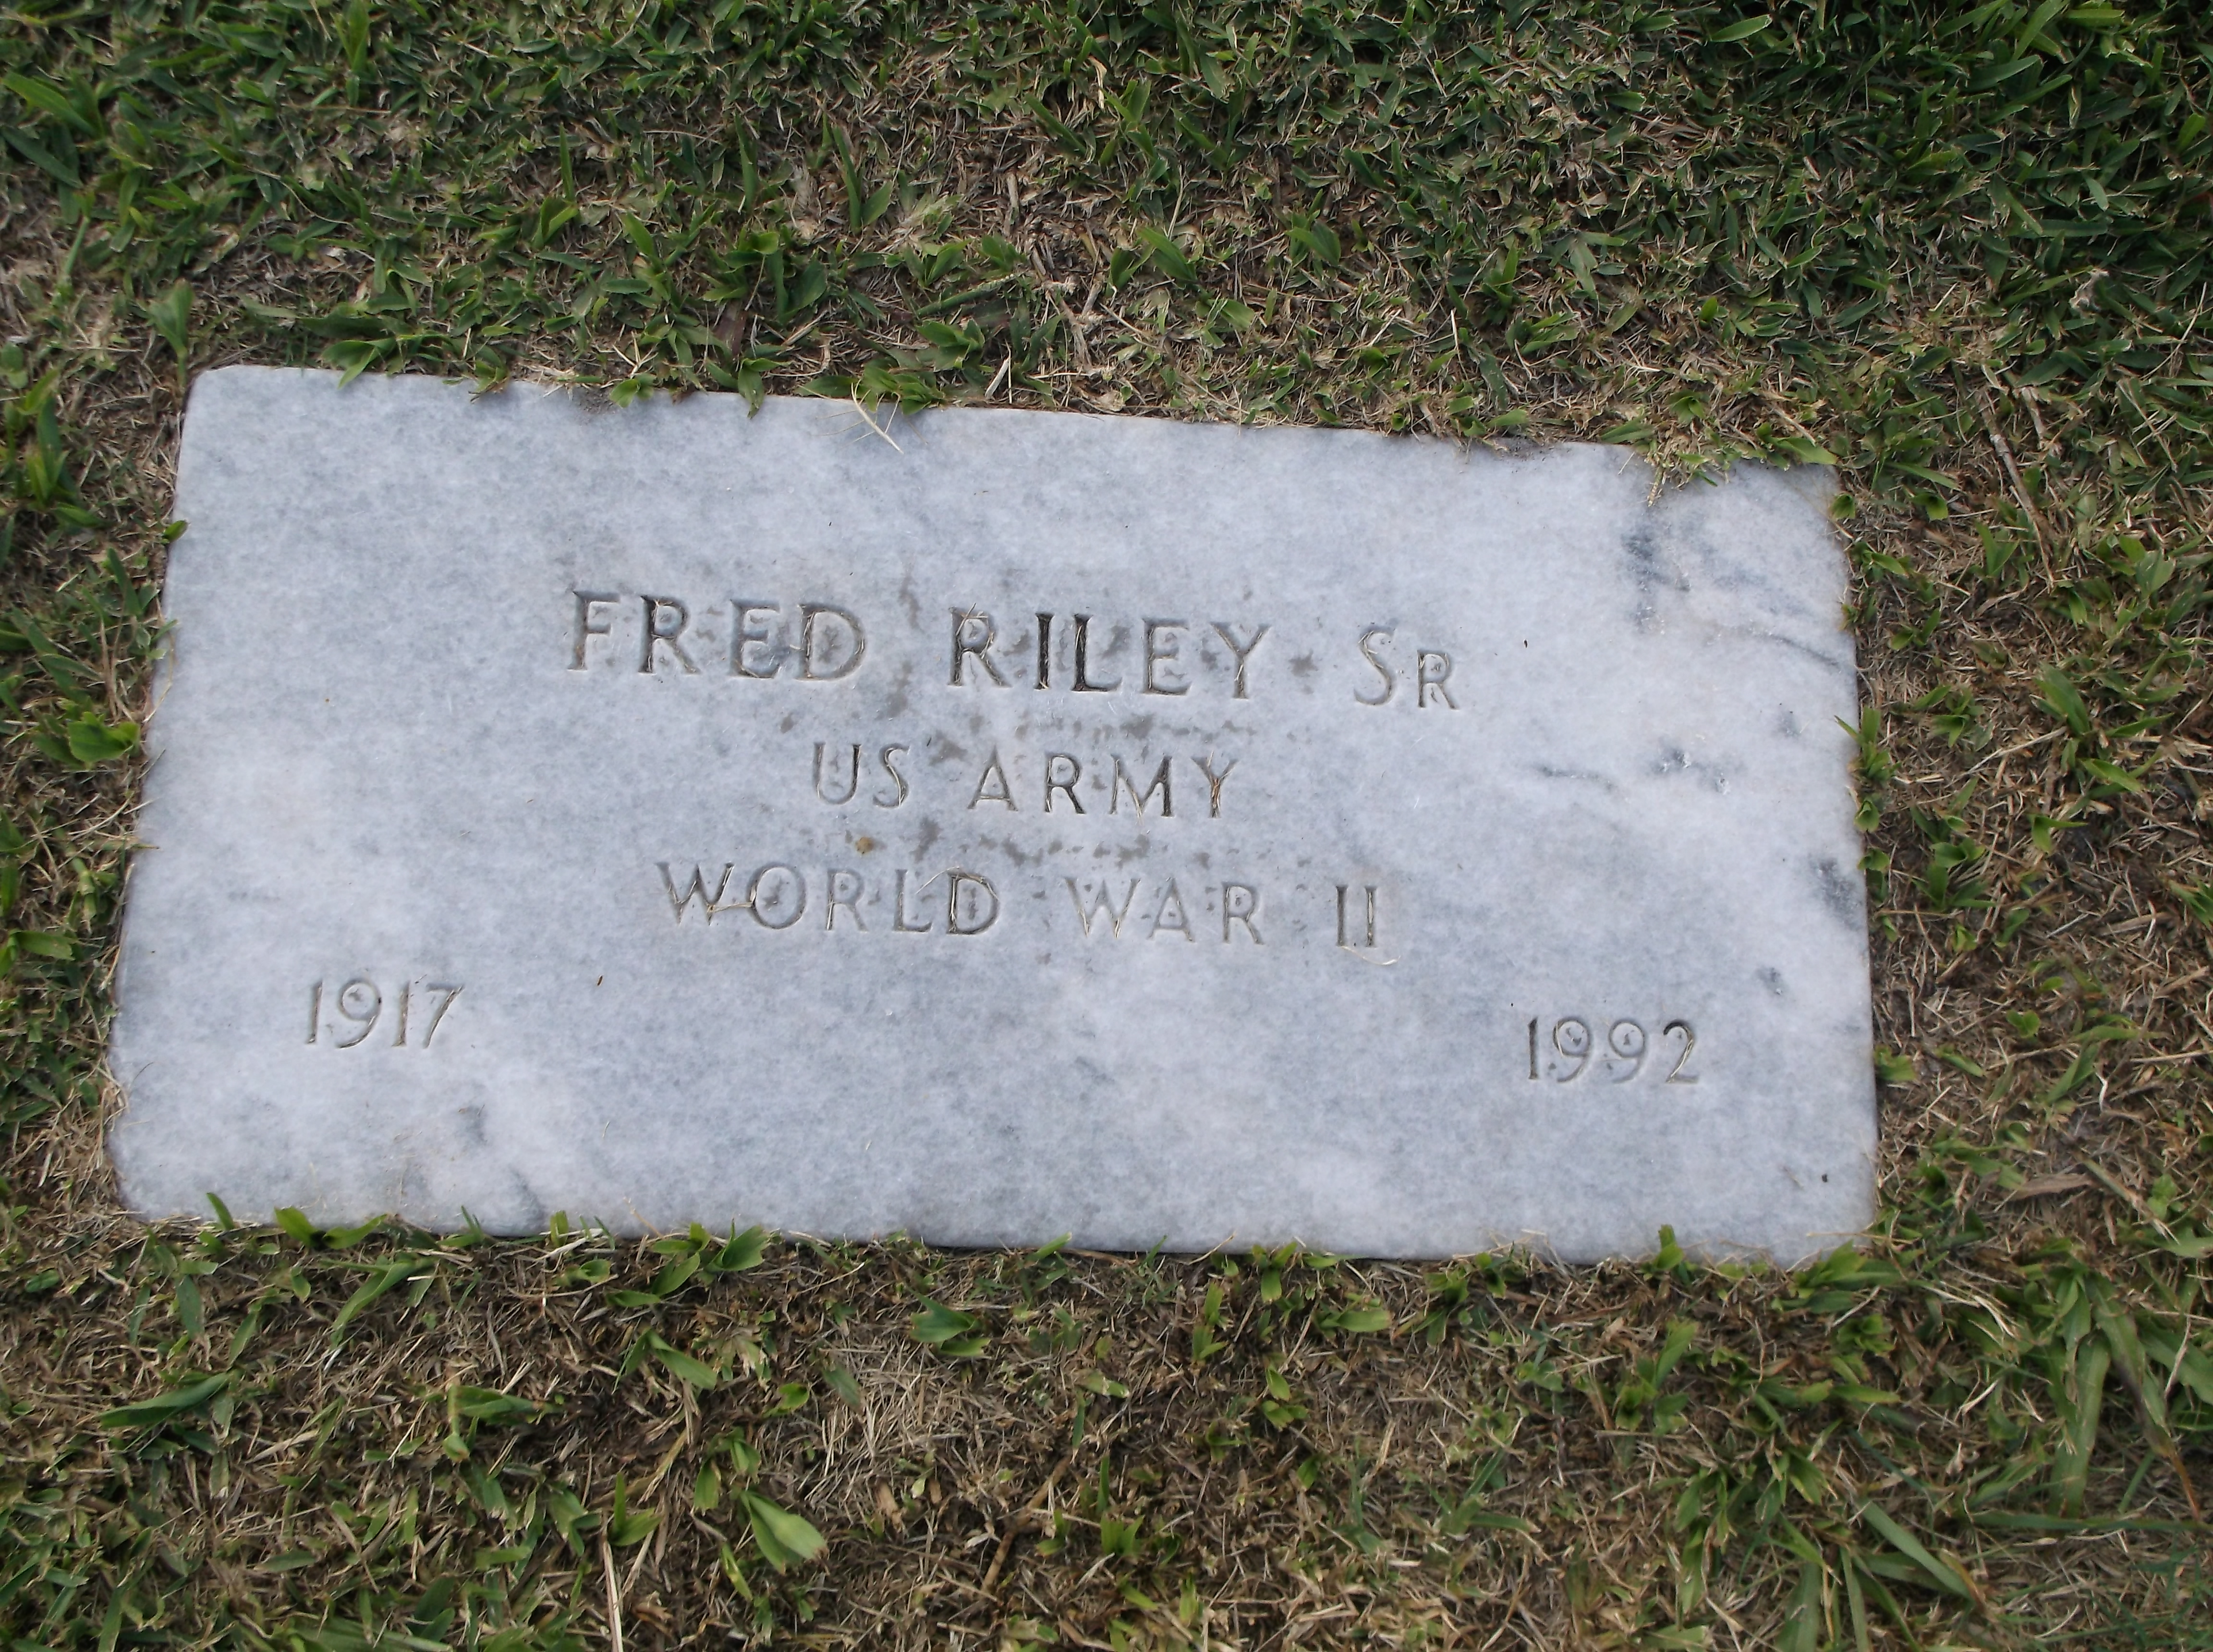 Fred Riley, Sr